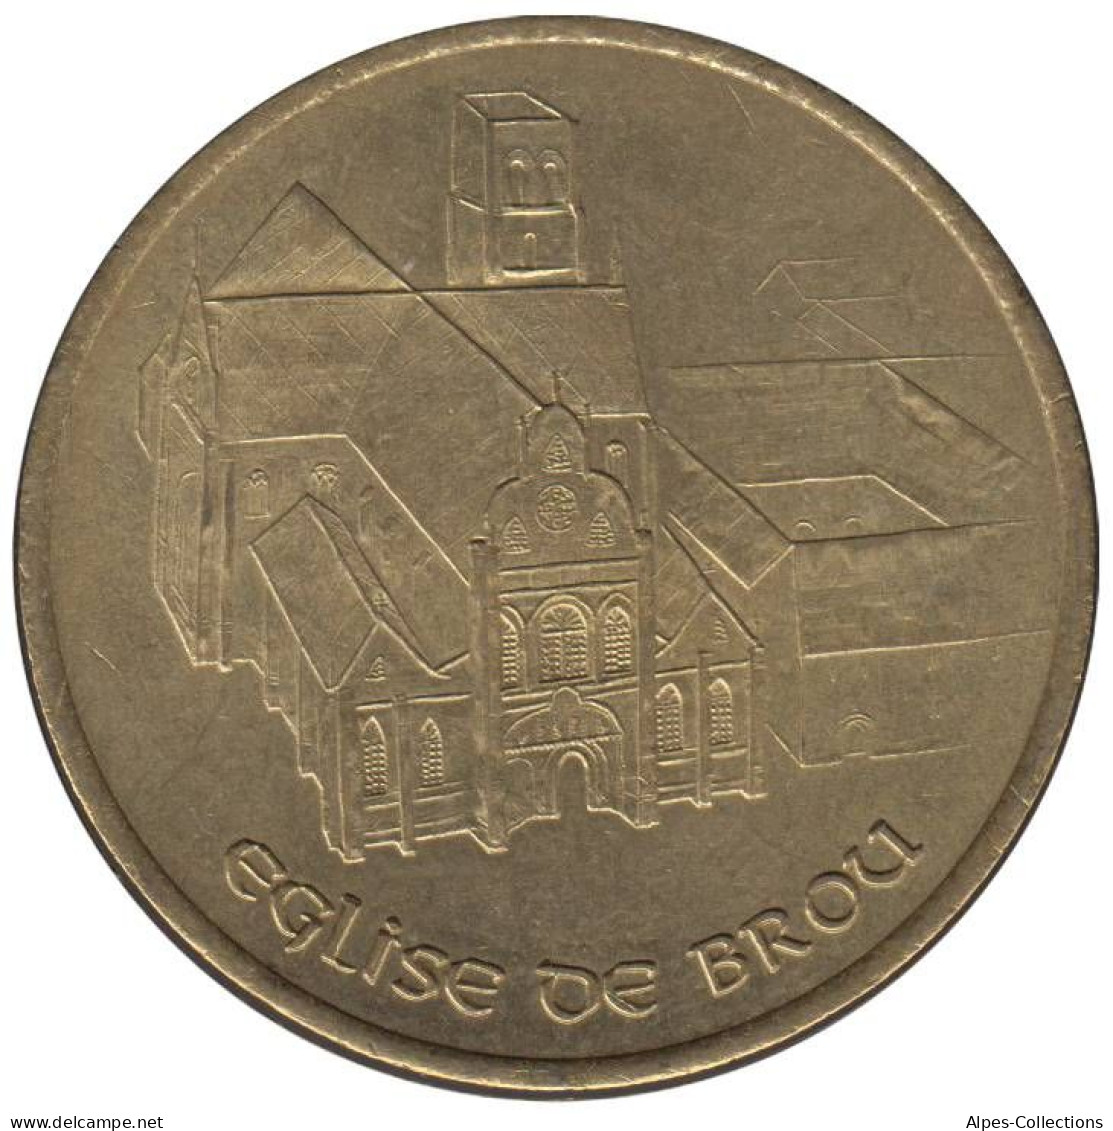 BOURG EN BRESSE - EU0010.6 - 1 EURO DES VILLES - Réf: T266 - 1997 - Euros Of The Cities